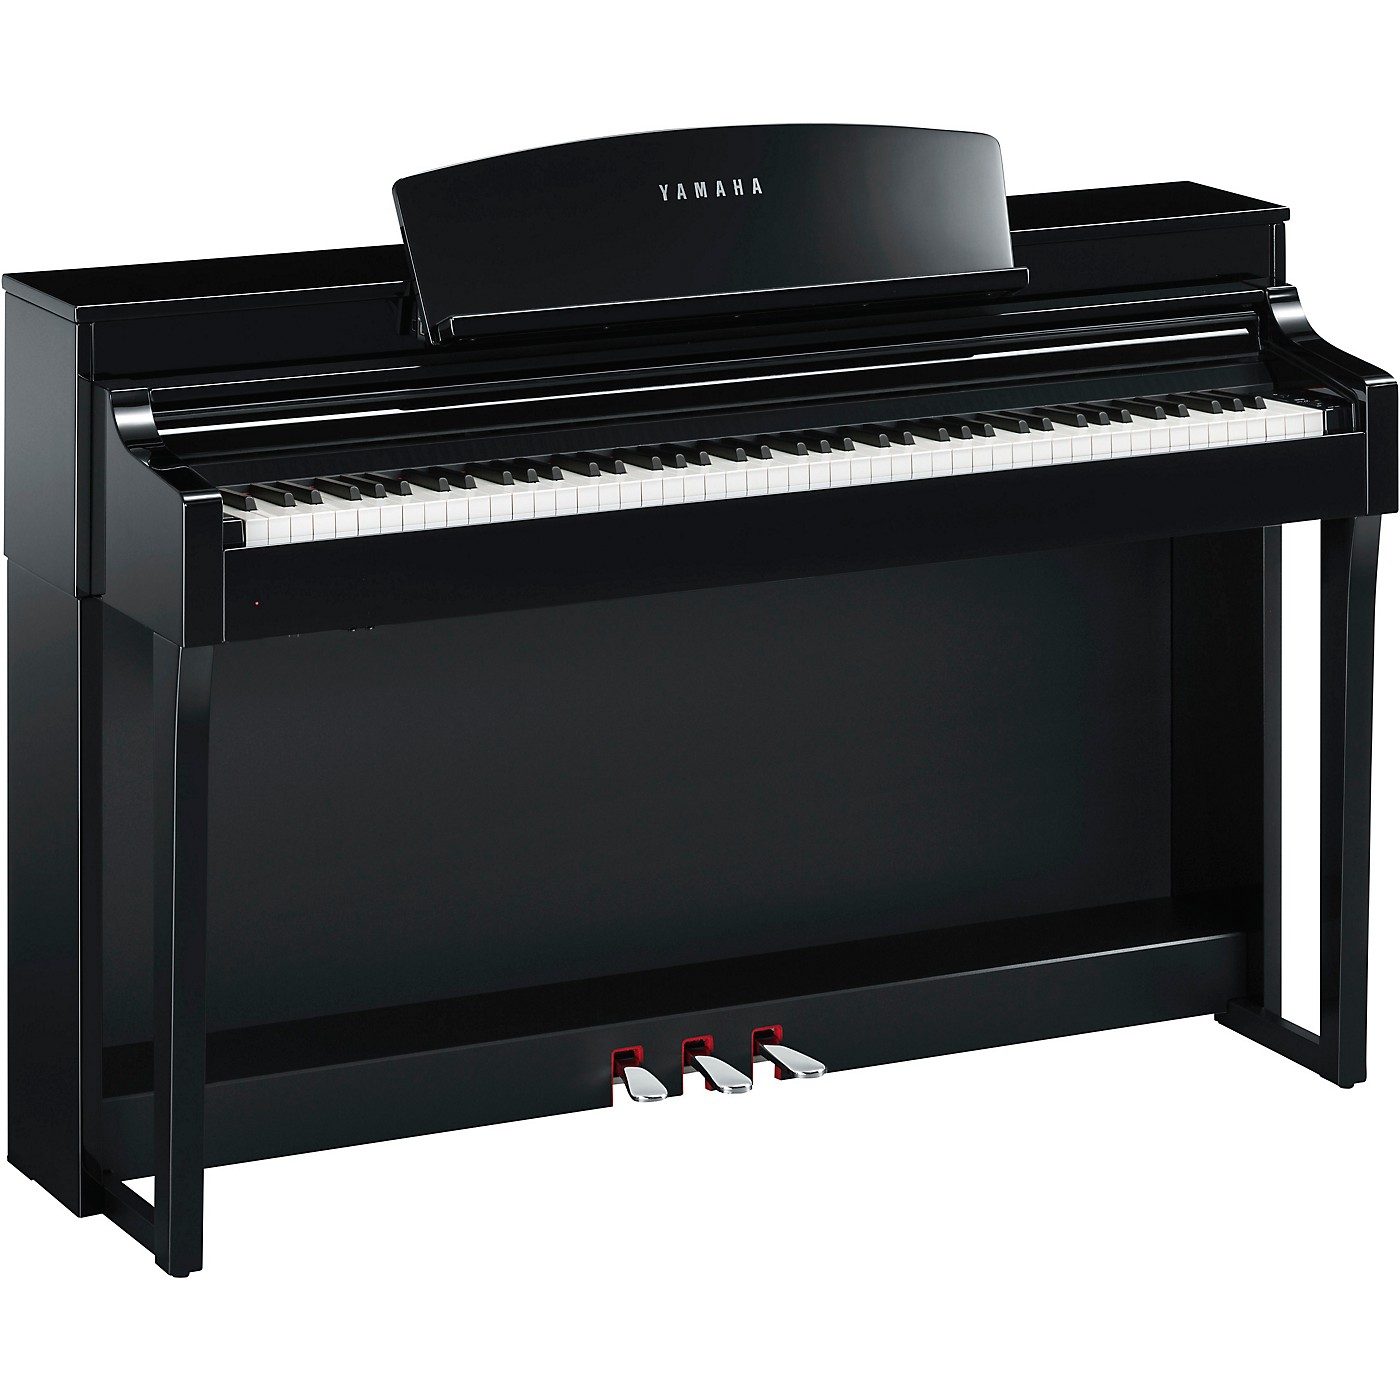 Yamaha Clavinova CSP-150 Console Digital Piano, Polished Ebony thumbnail